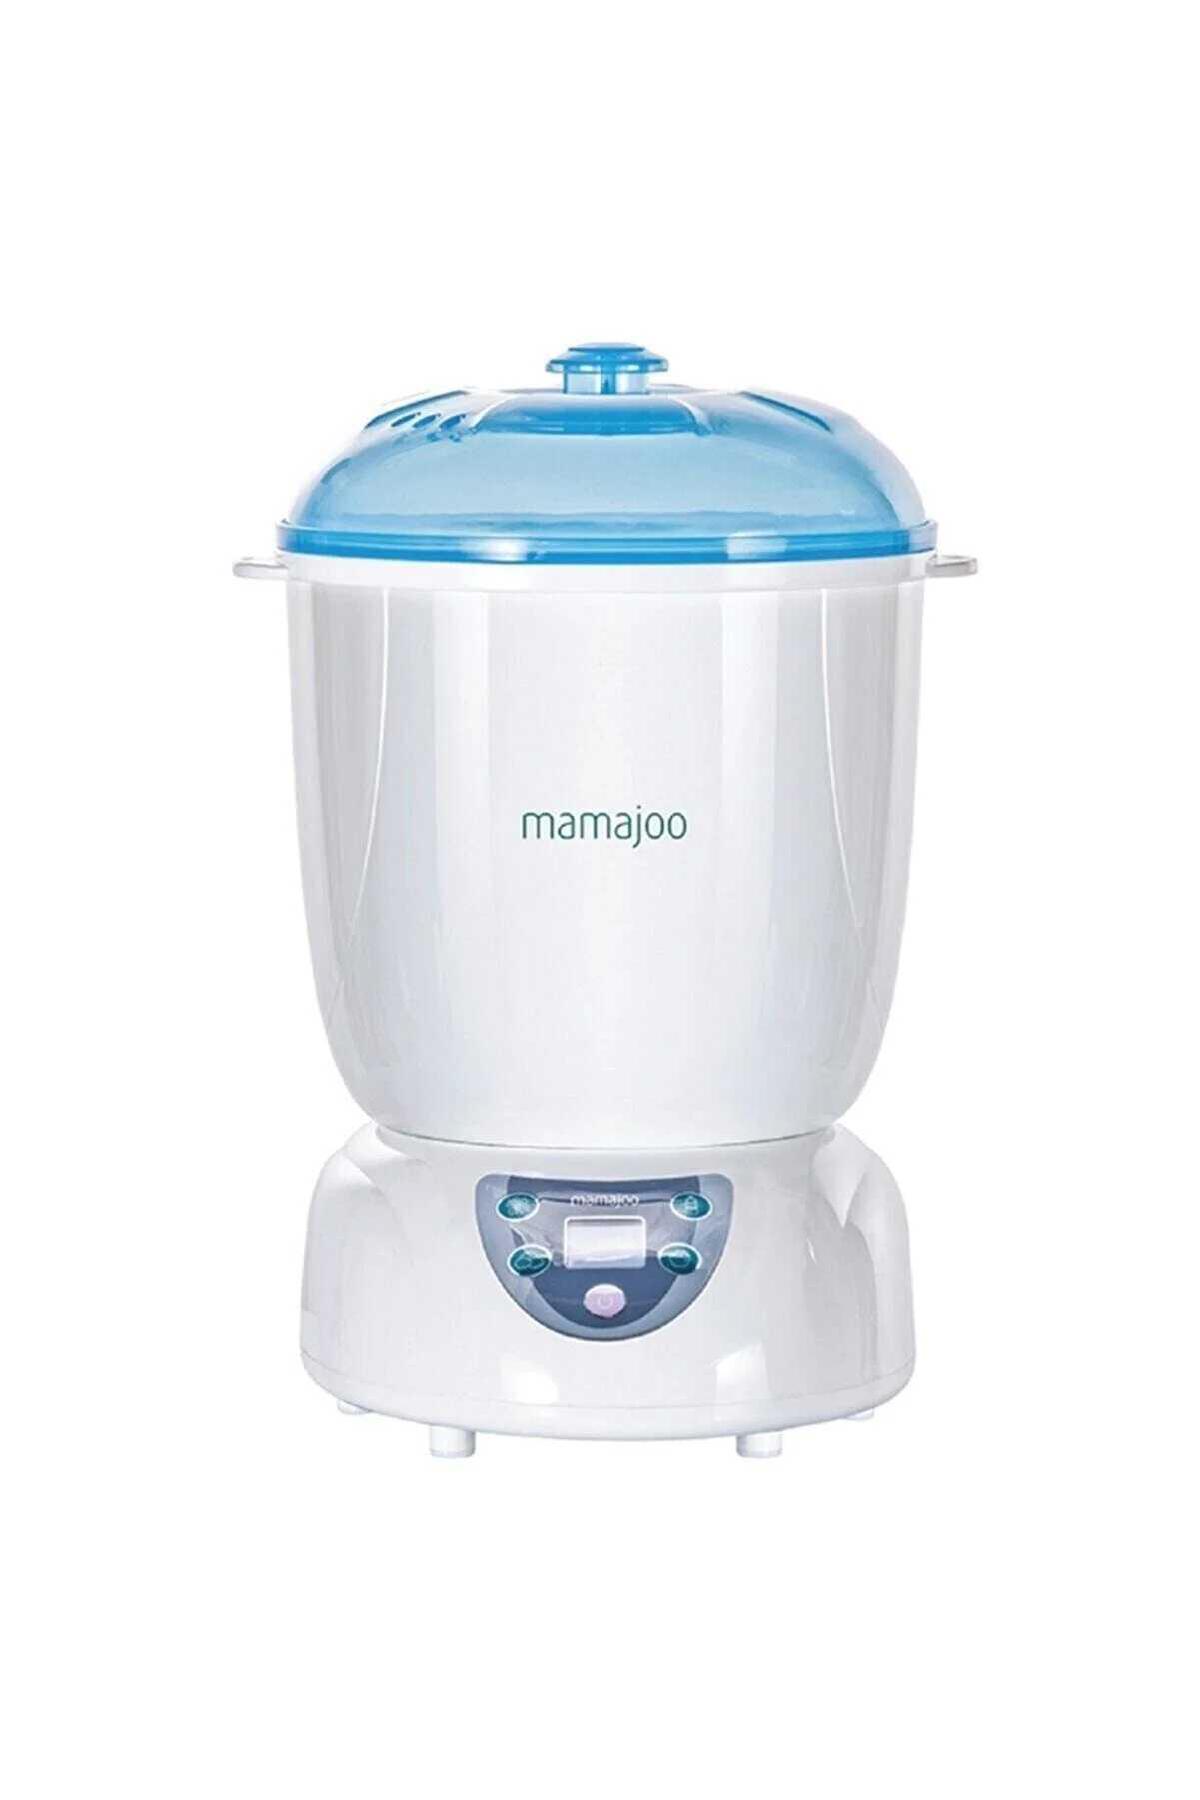 دستگاه گرم کننده غذا Mamajoo کد.1002